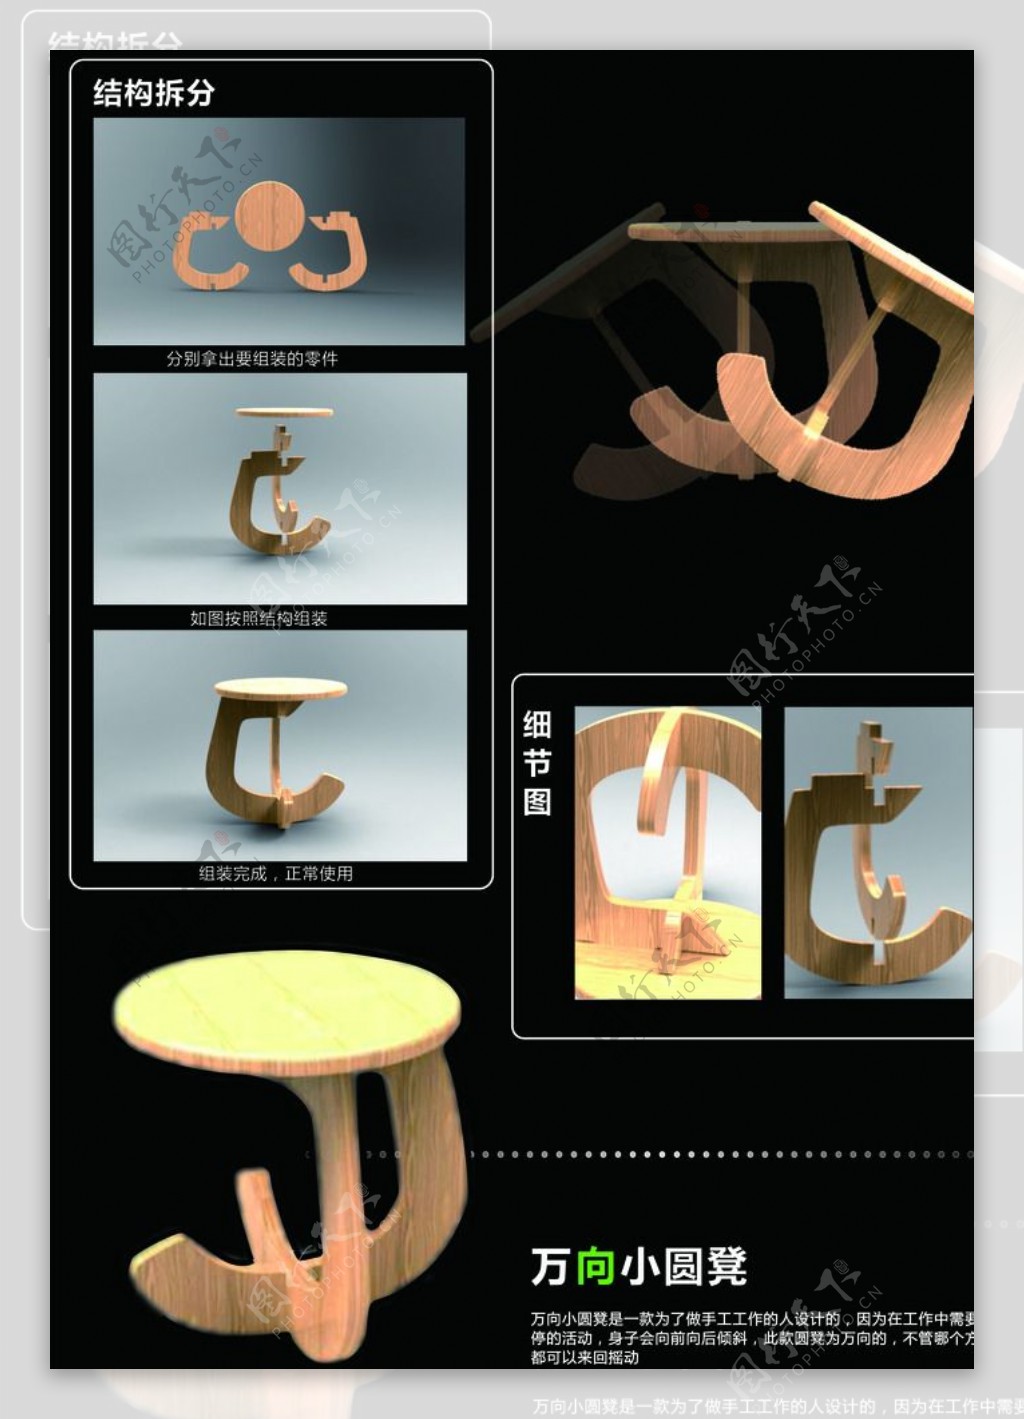 摇摇椅设计图片